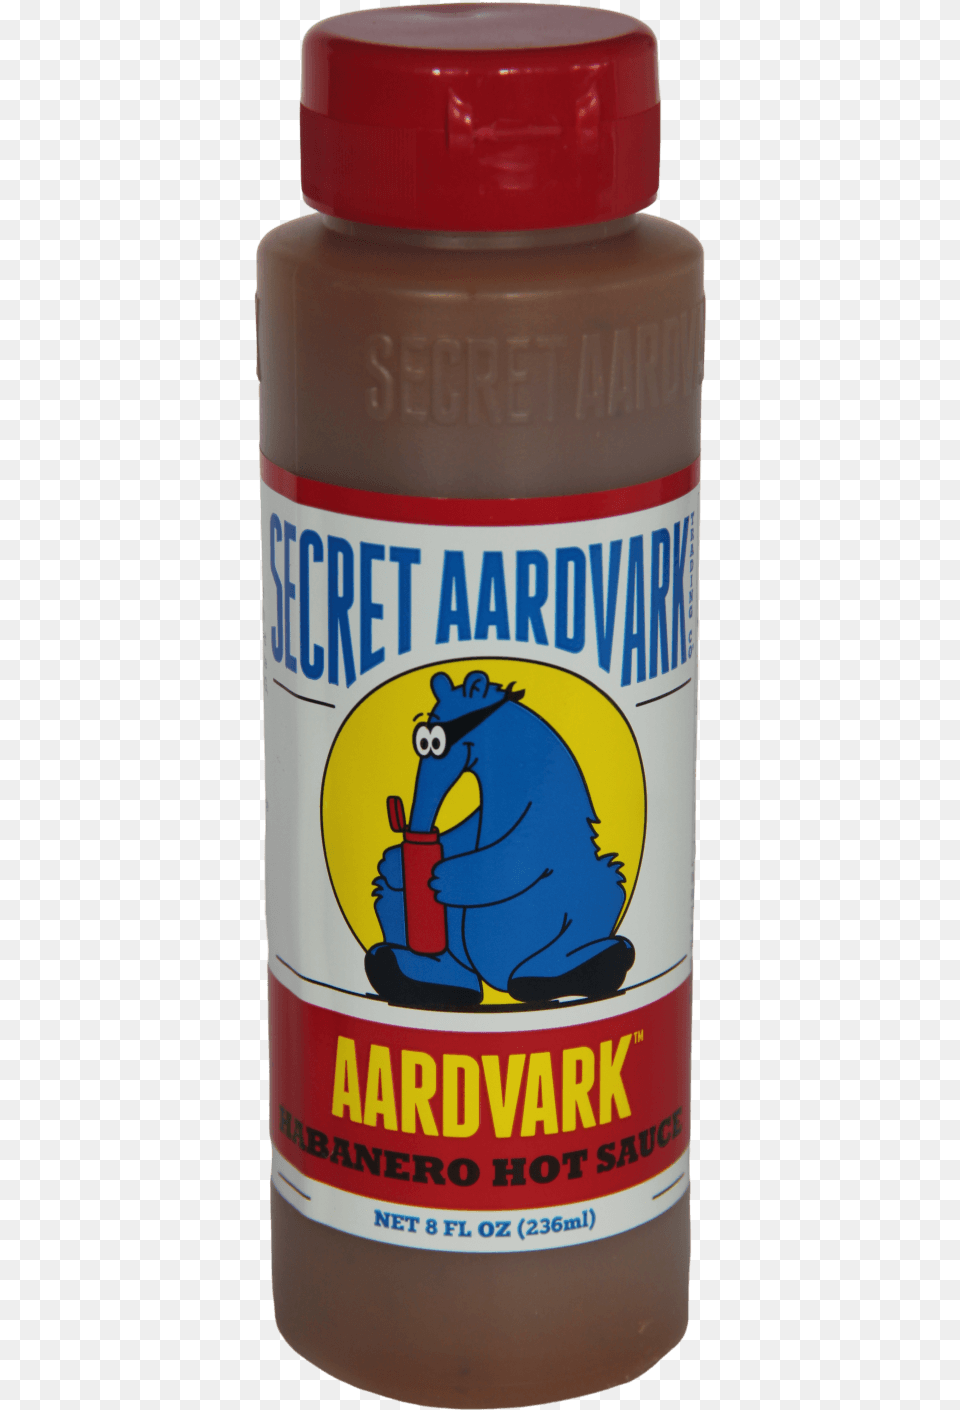 Secret Aardvark Habanero Hot Sauce 236ml Stallion, Alcohol, Beer, Beverage, Food Png Image